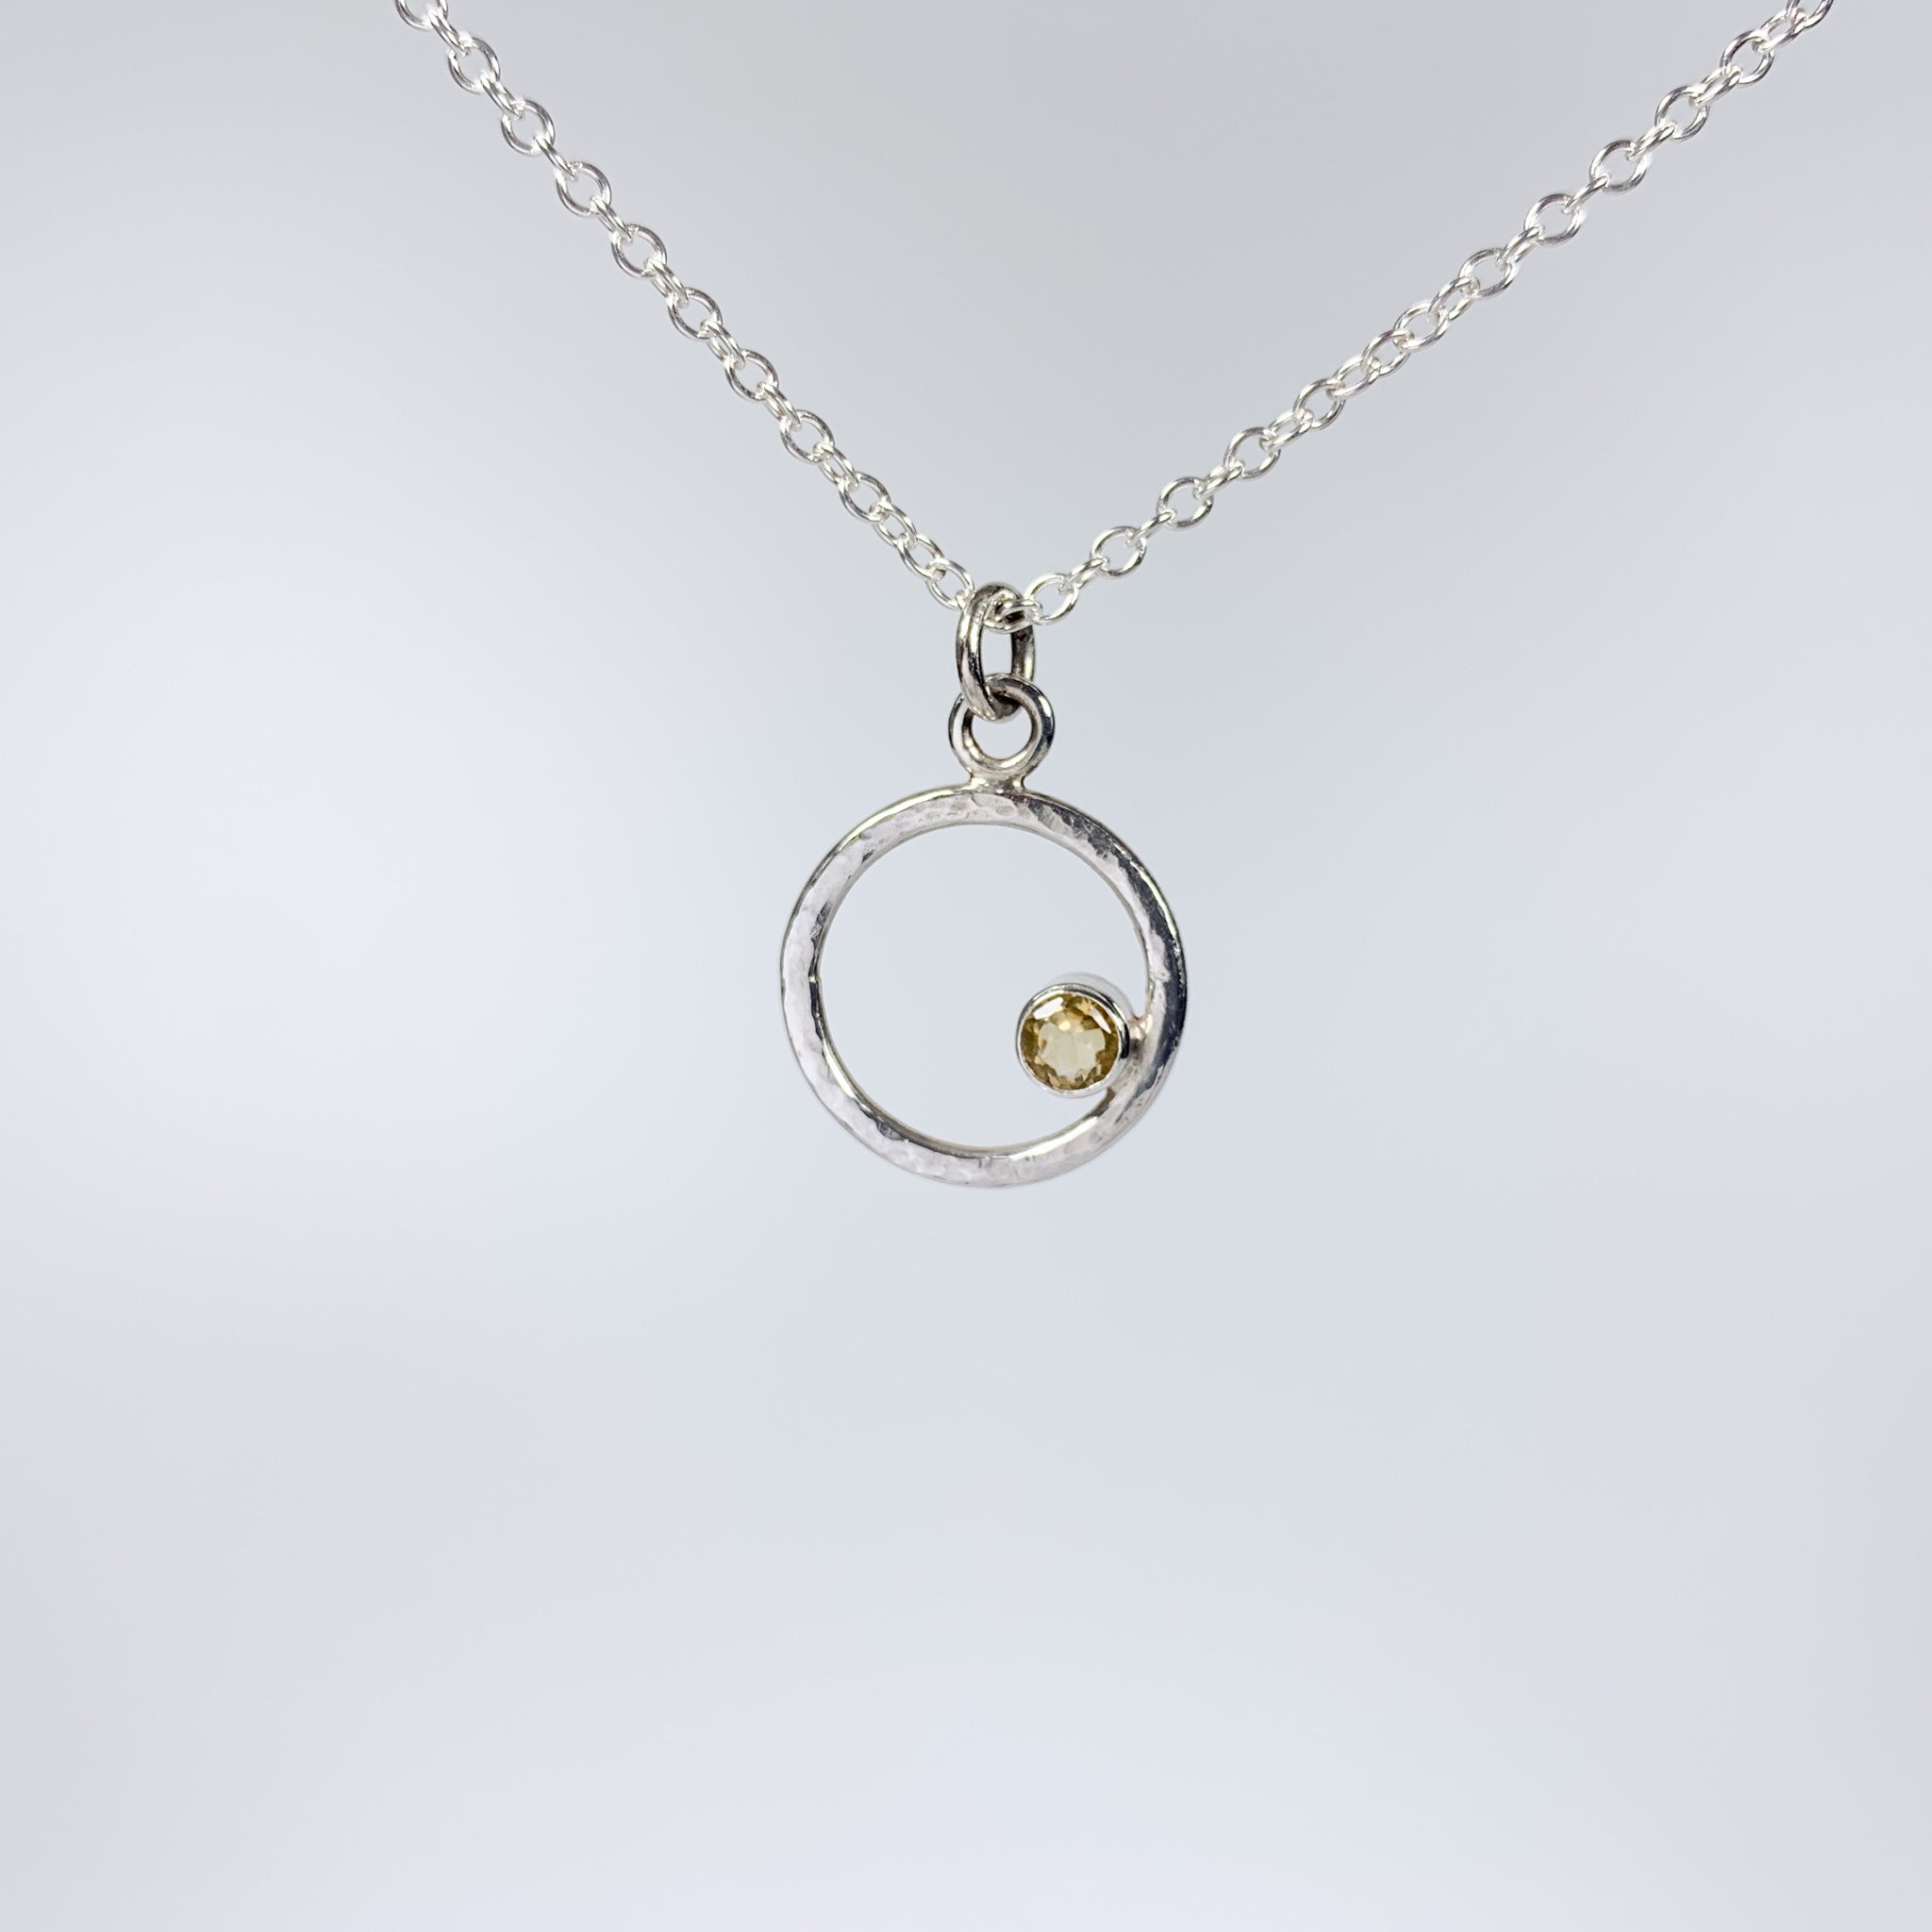 Caldera Eclissi Citrine Silver Pendant Necklace